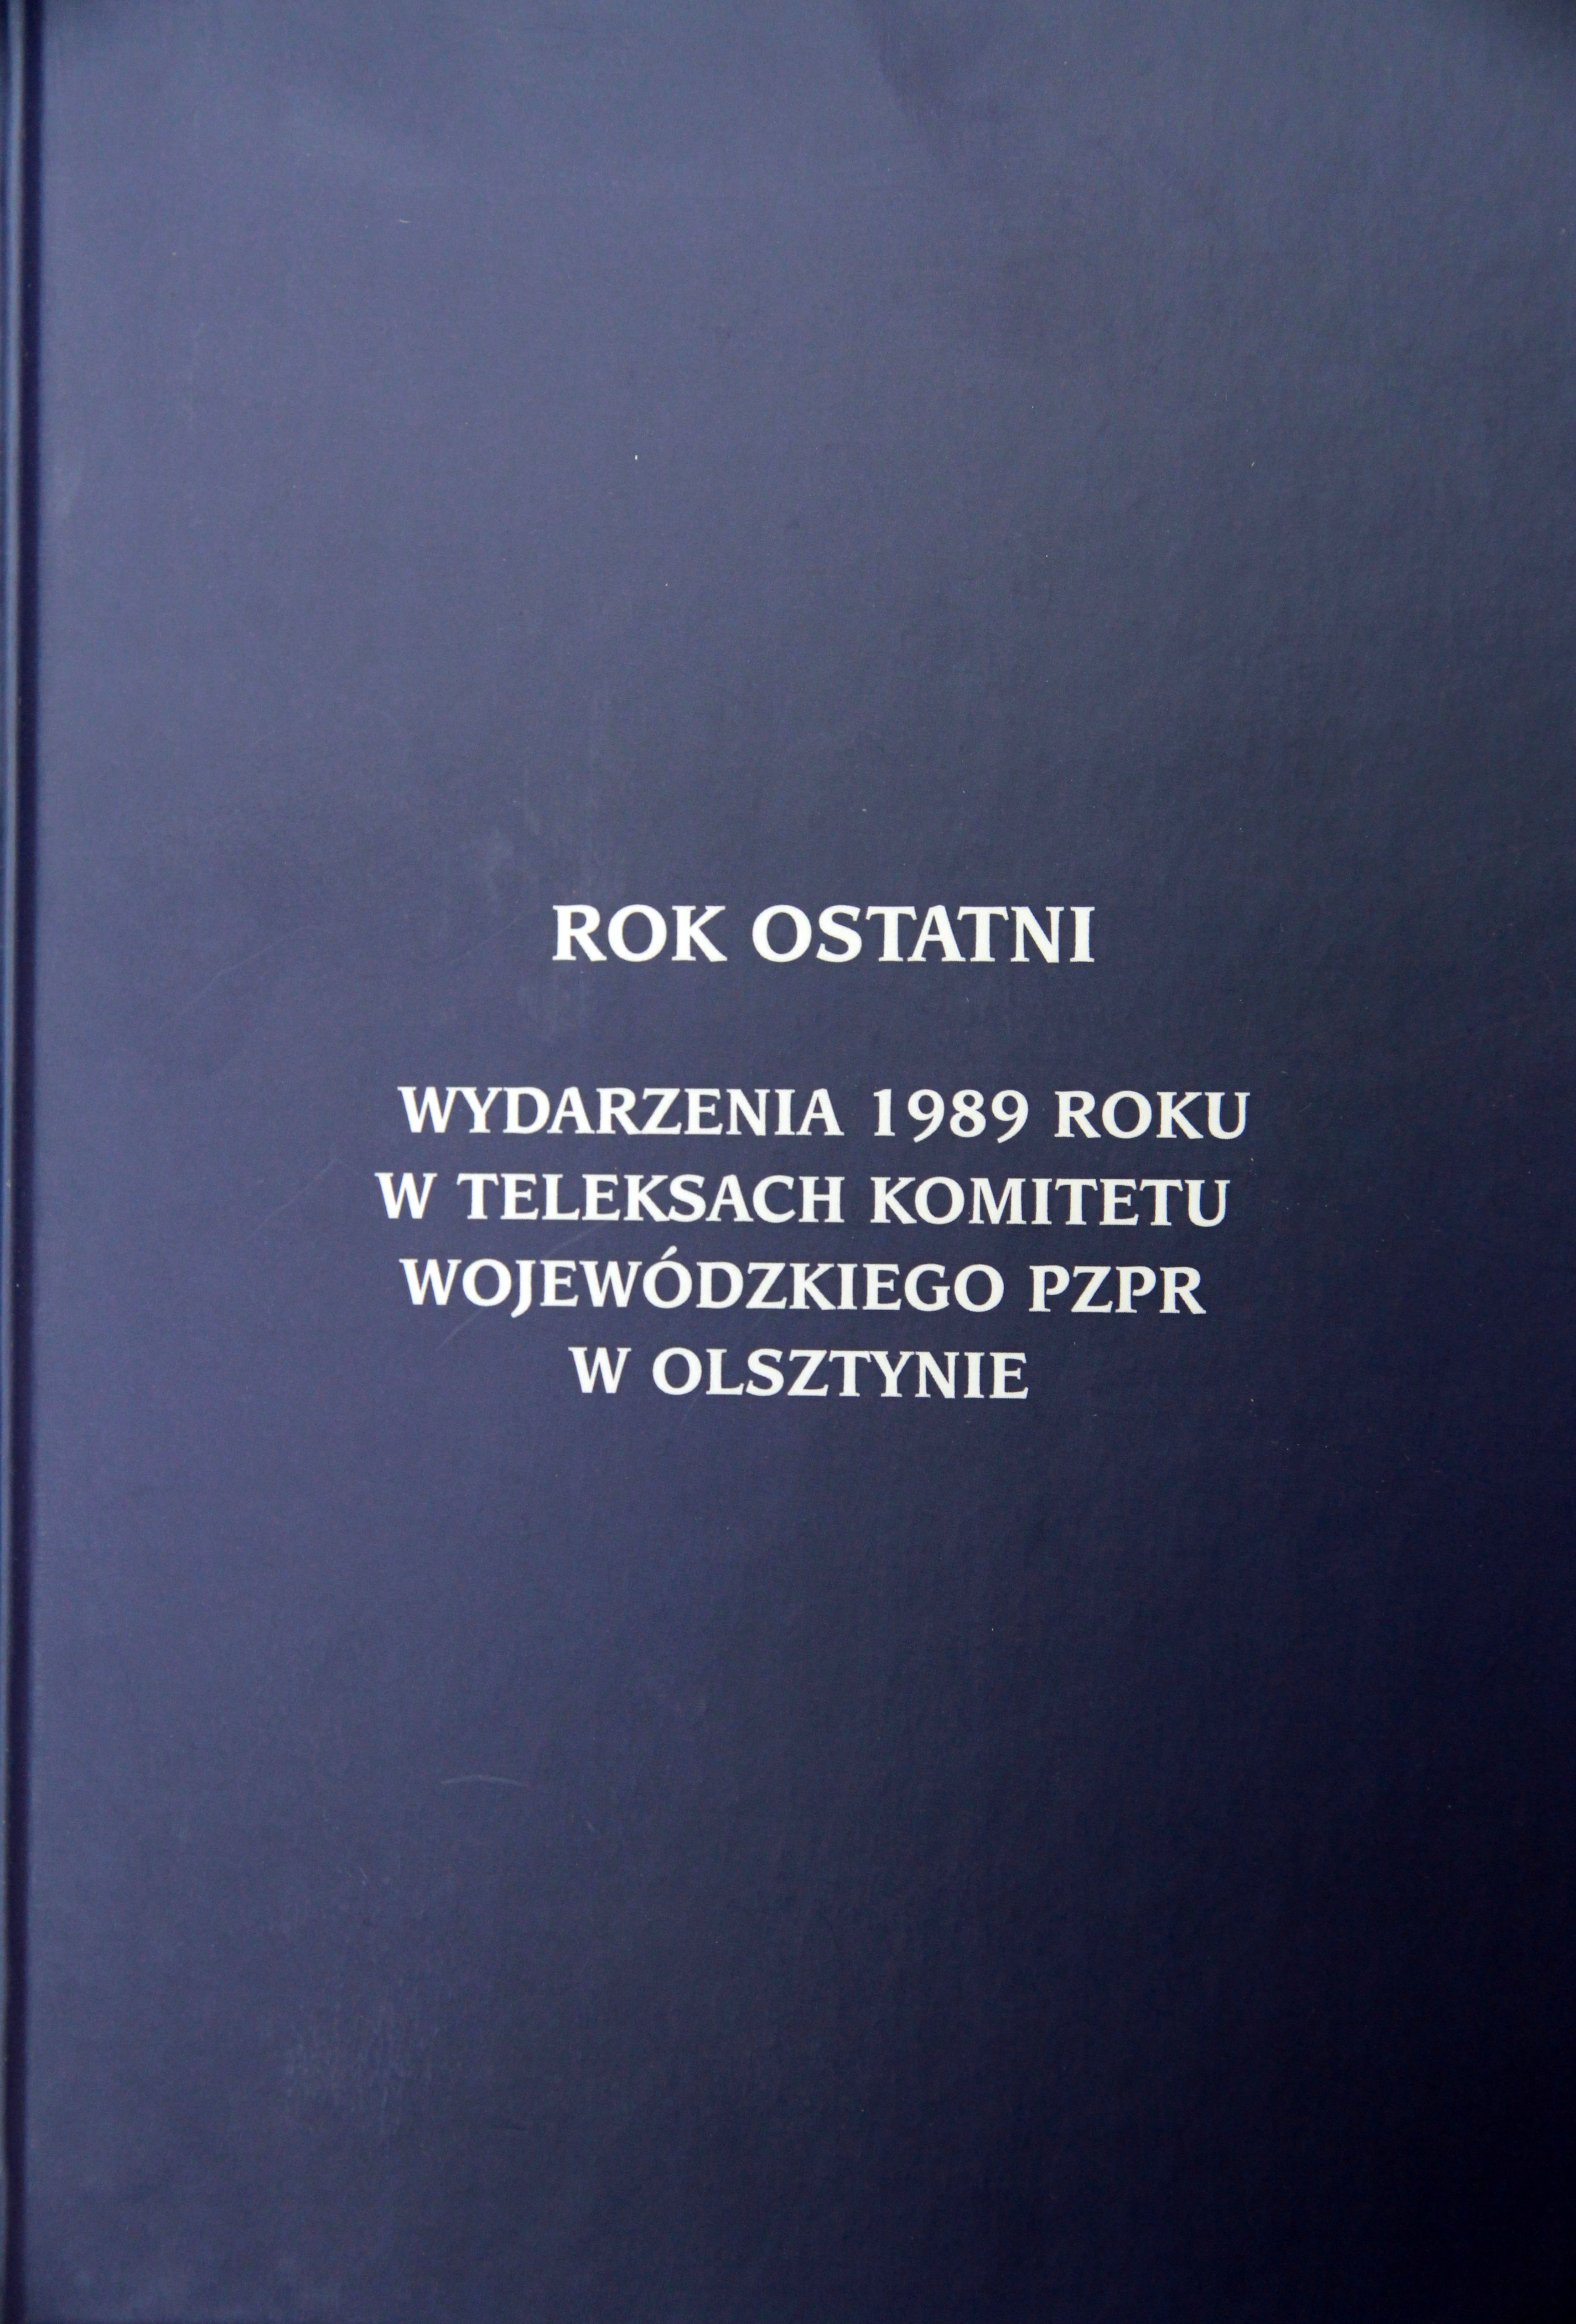 Okładka książki „Rok ostatni. Wydarzenia 1989 roku w teleksach Komitetu Wojewódzkiego PZPR w Olsztynie”